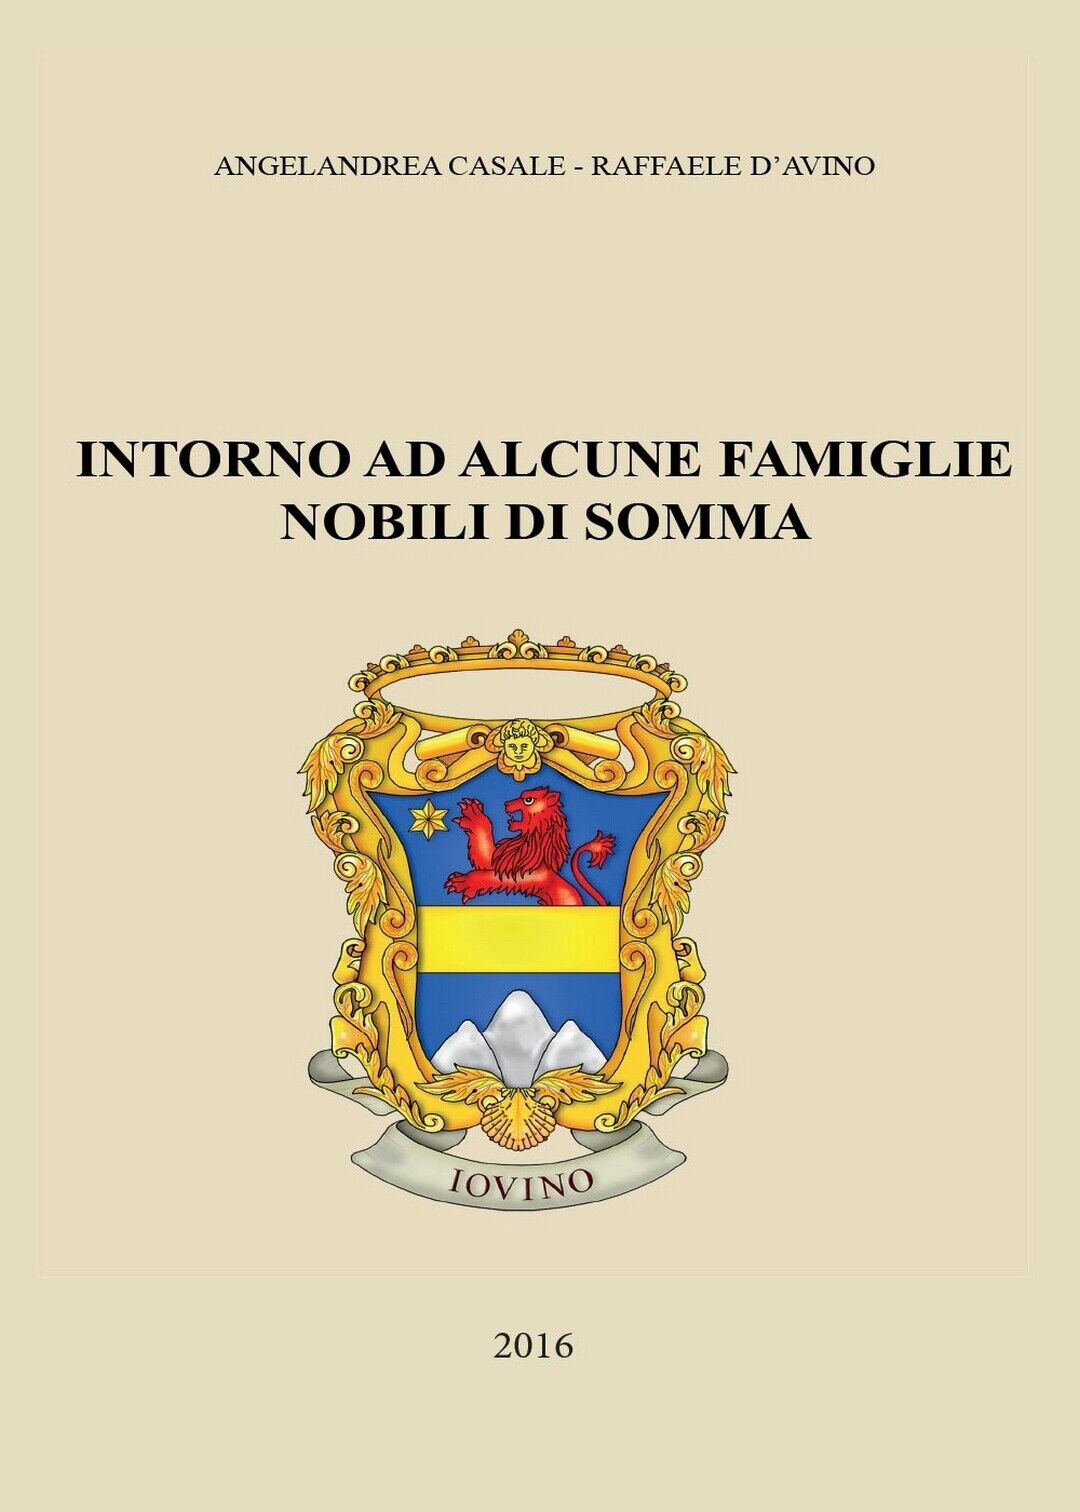 Intorno ad alcune famiglie nobili di Somma, Angelandrea Casale, Raffaele d'Avino